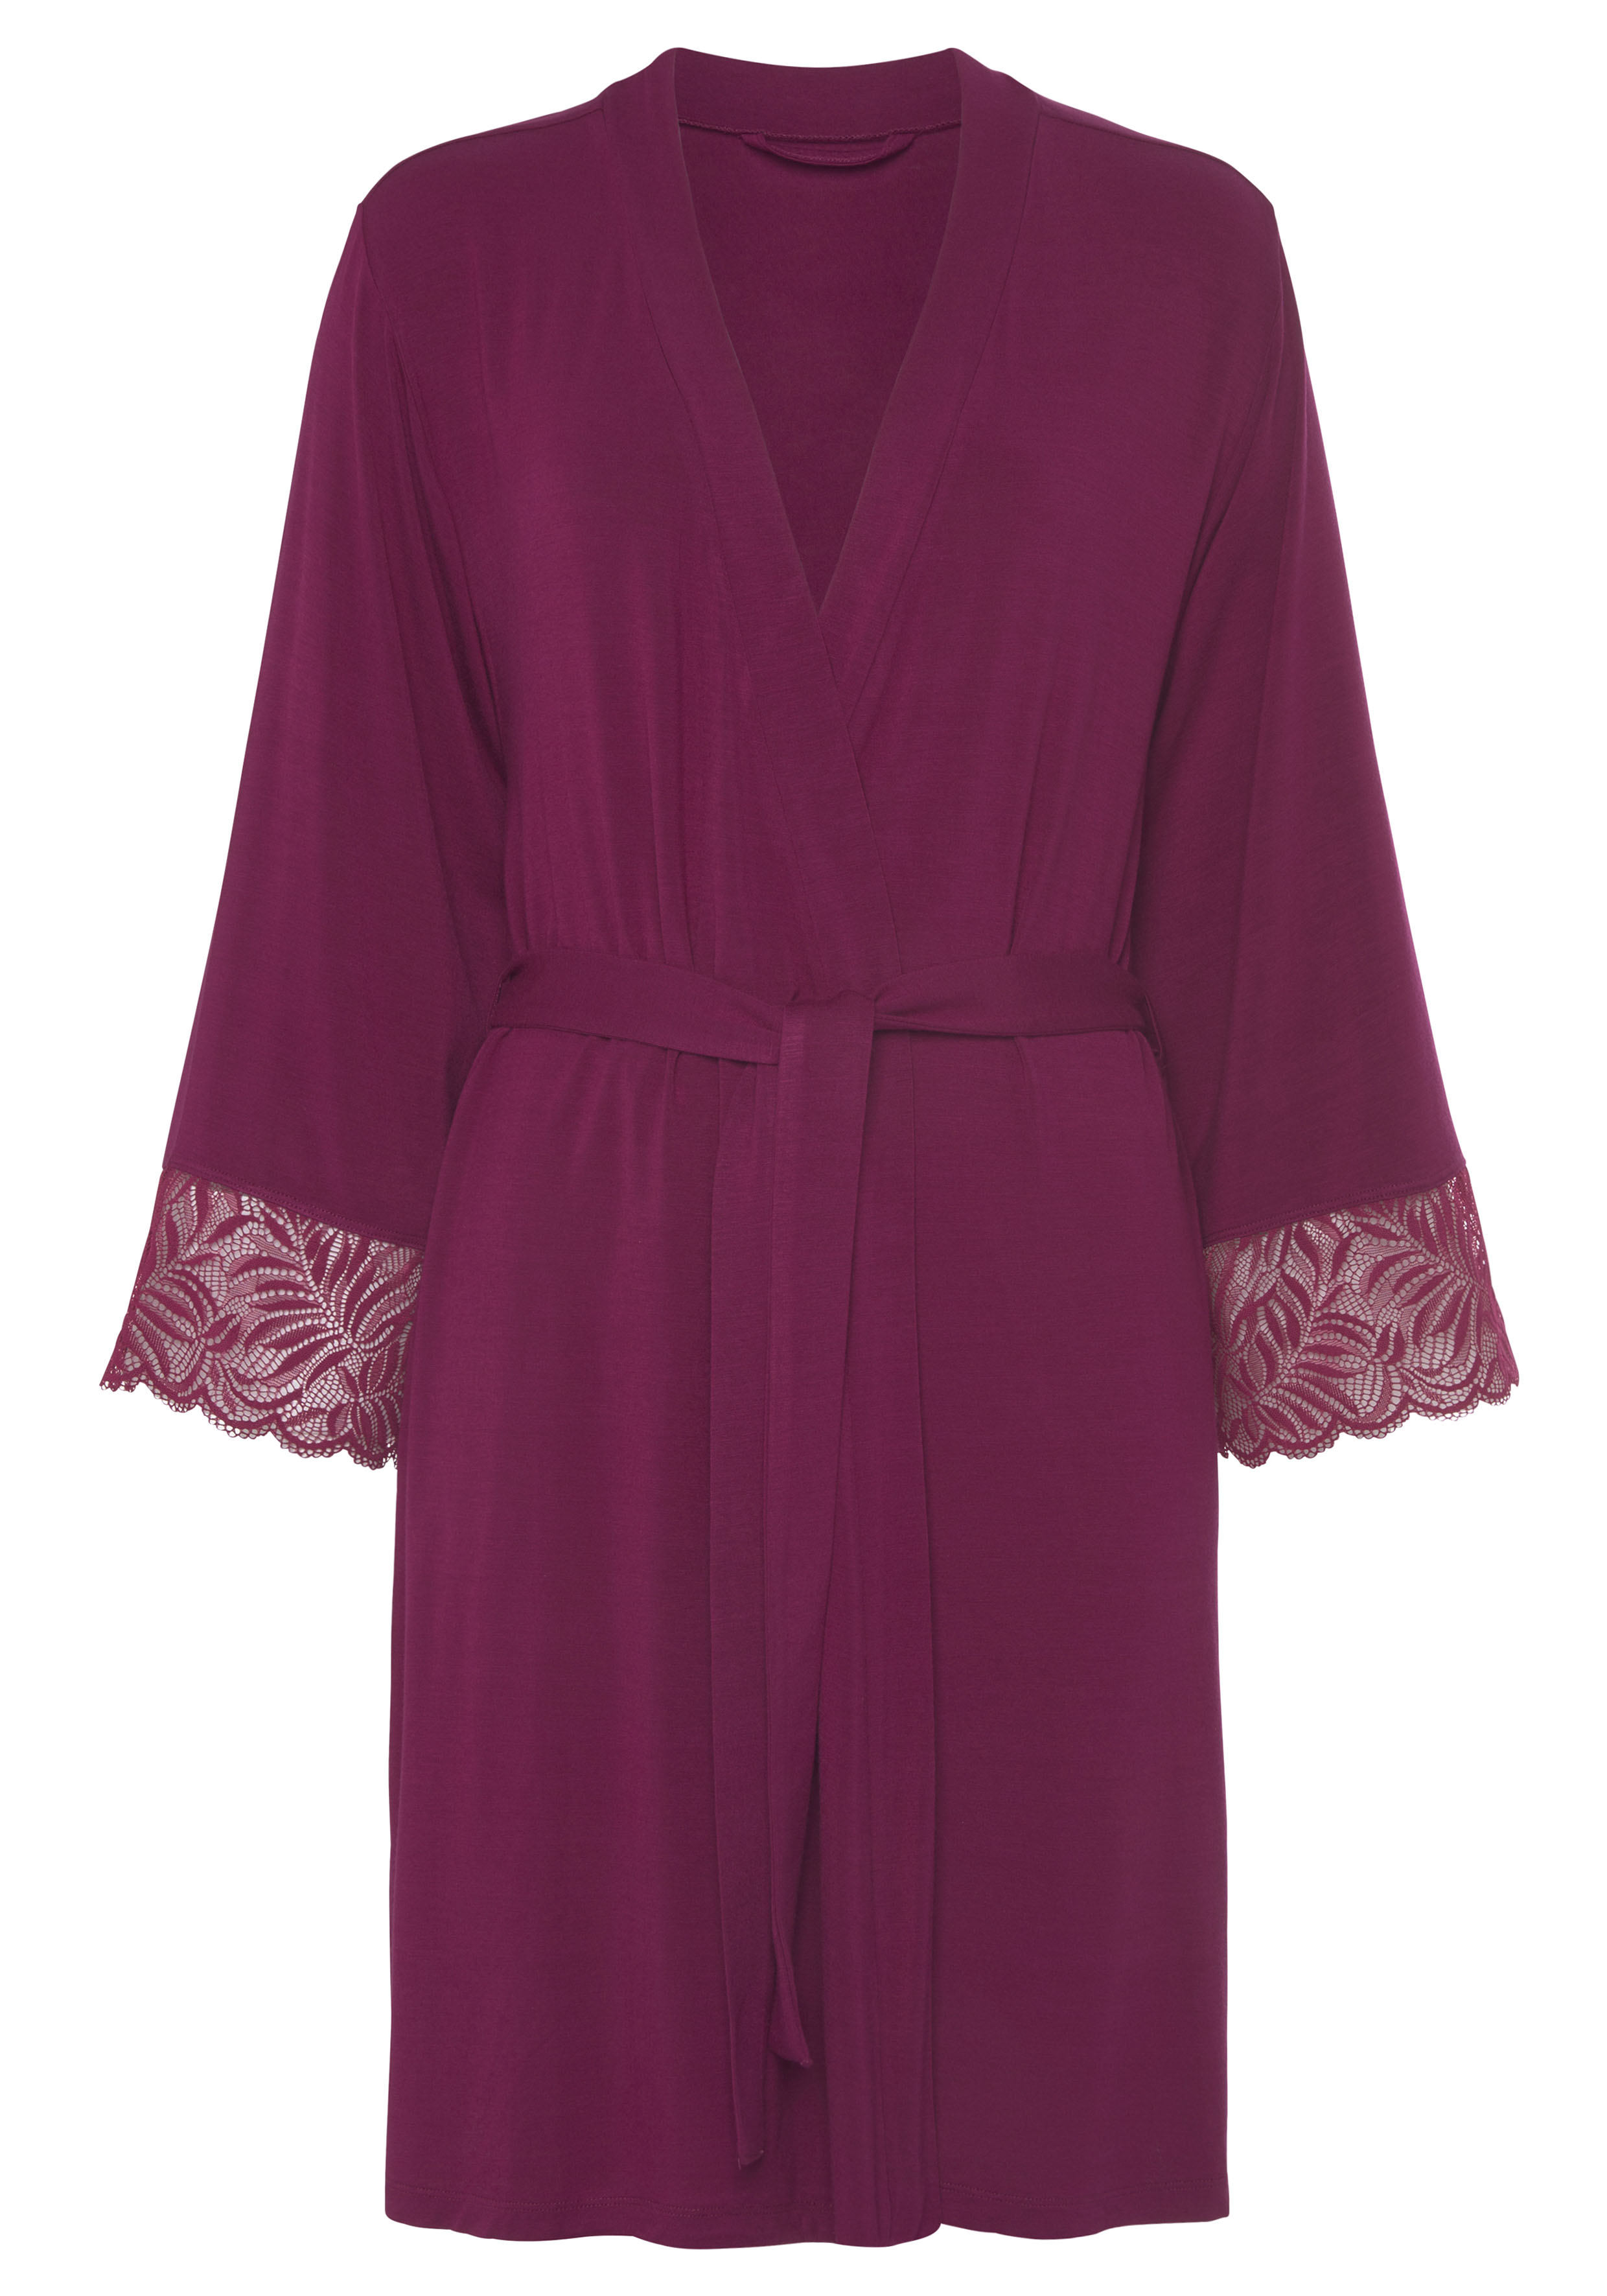 LASCANA Kimono, mit schönen Spitzendetails » LASCANA | Bademode,  Unterwäsche & Lingerie online kaufen